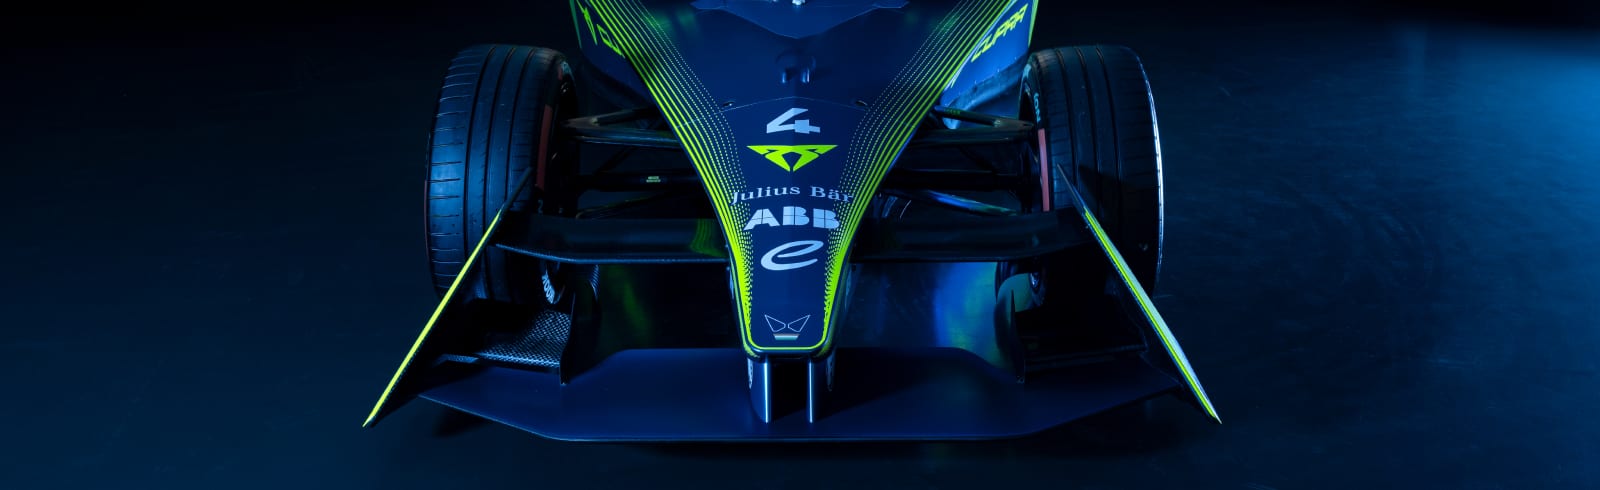 CUPRA dołącza do zespołu ABT w zawodach ABB FIA Formuła E